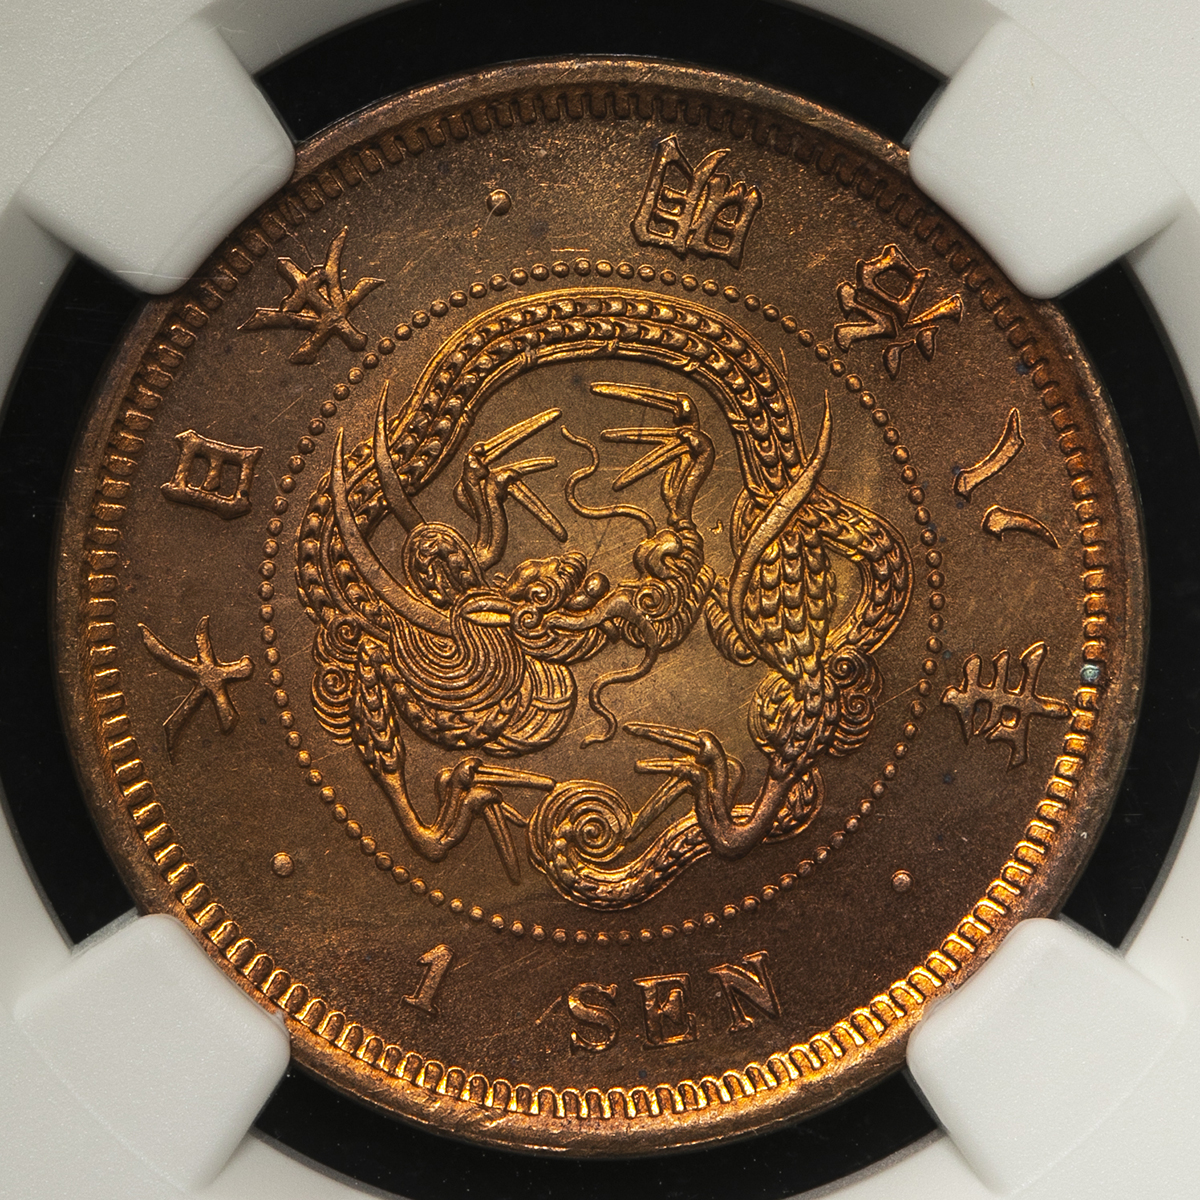 竜一銭銅貨明治13年 MS65RB - 旧貨幣/金貨/銀貨/記念硬貨